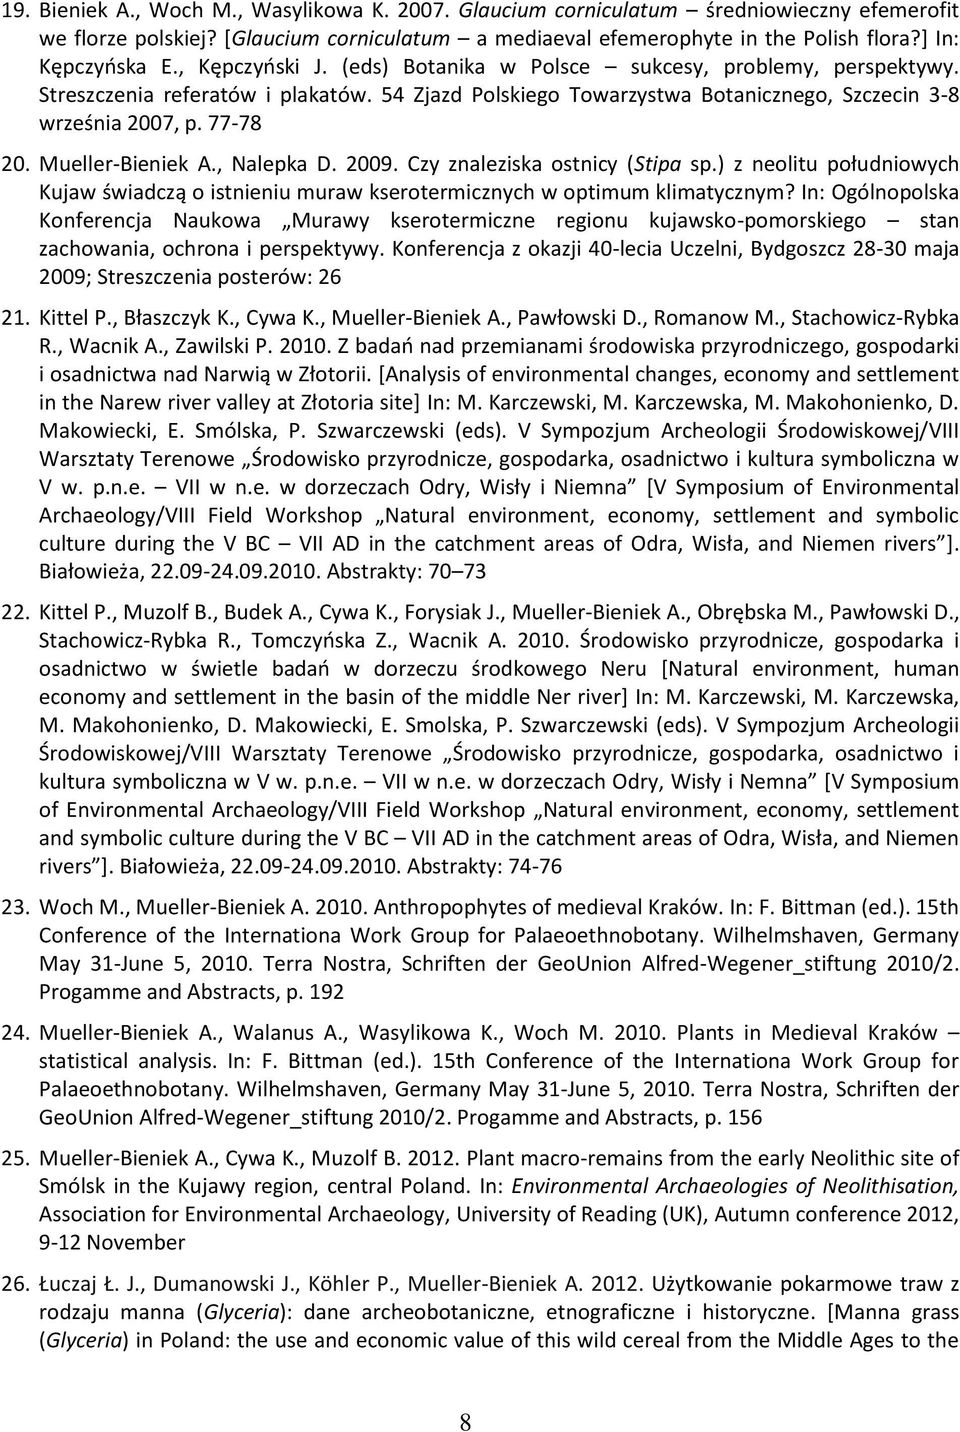 Mueller-Bieniek A., Nalepka D. 2009. Czy znaleziska ostnicy (Stipa sp.) z neolitu południowych Kujaw świadczą o istnieniu muraw kserotermicznych w optimum klimatycznym?